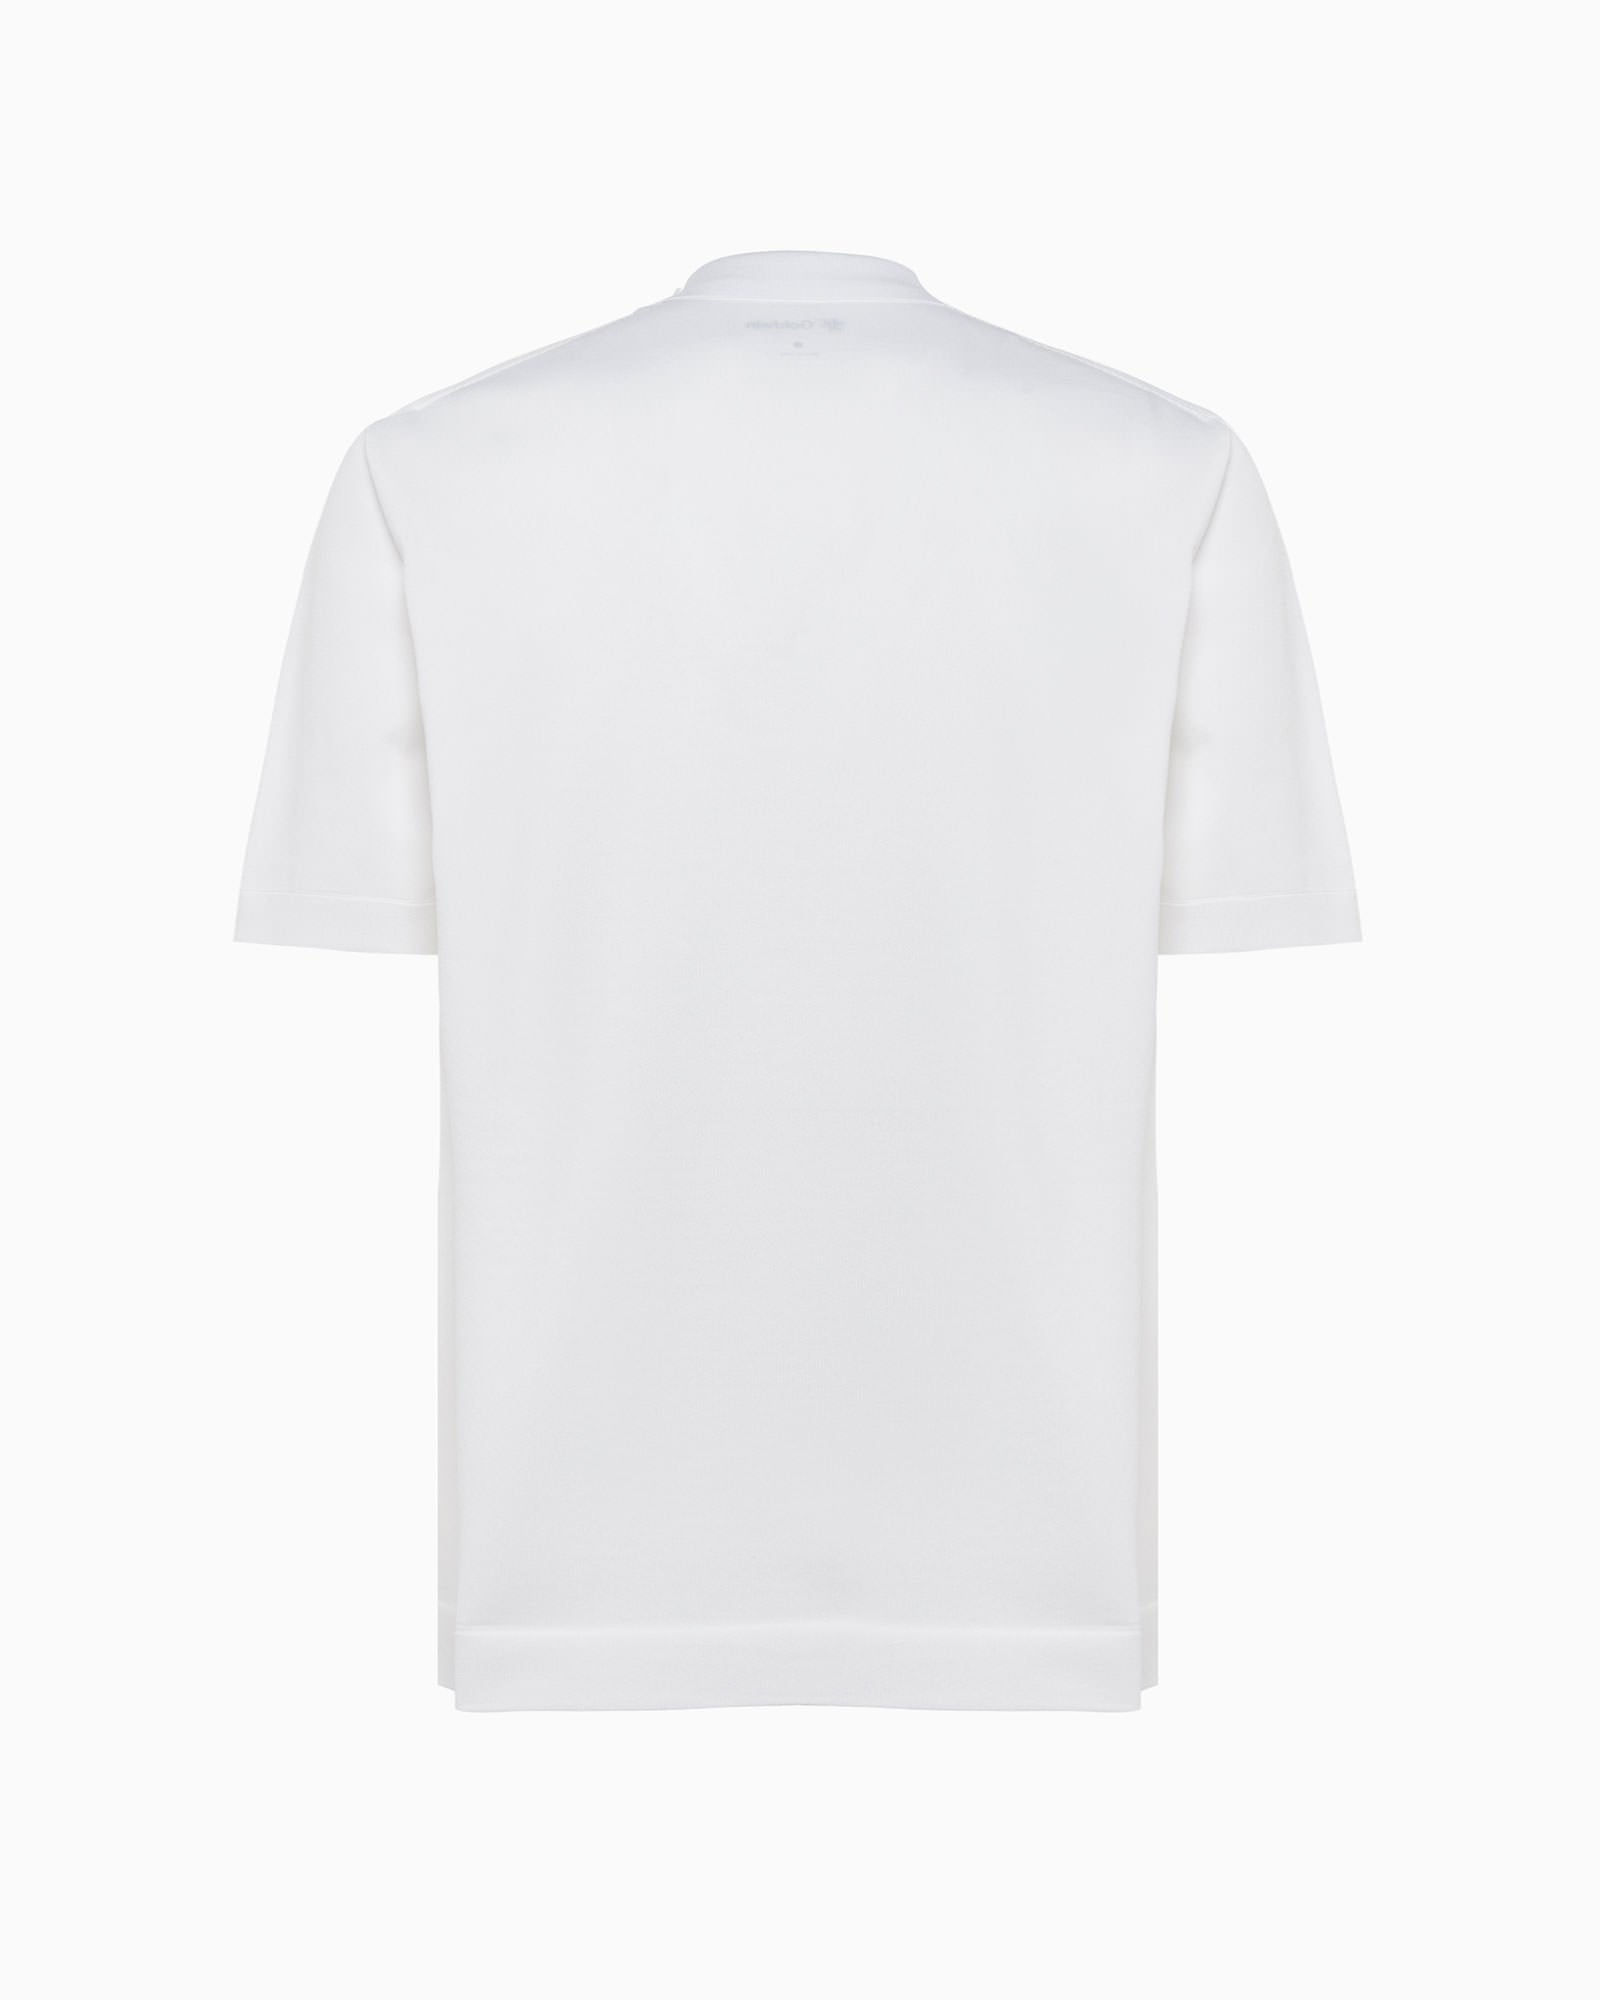 Wholegarment Polo Shirt - White